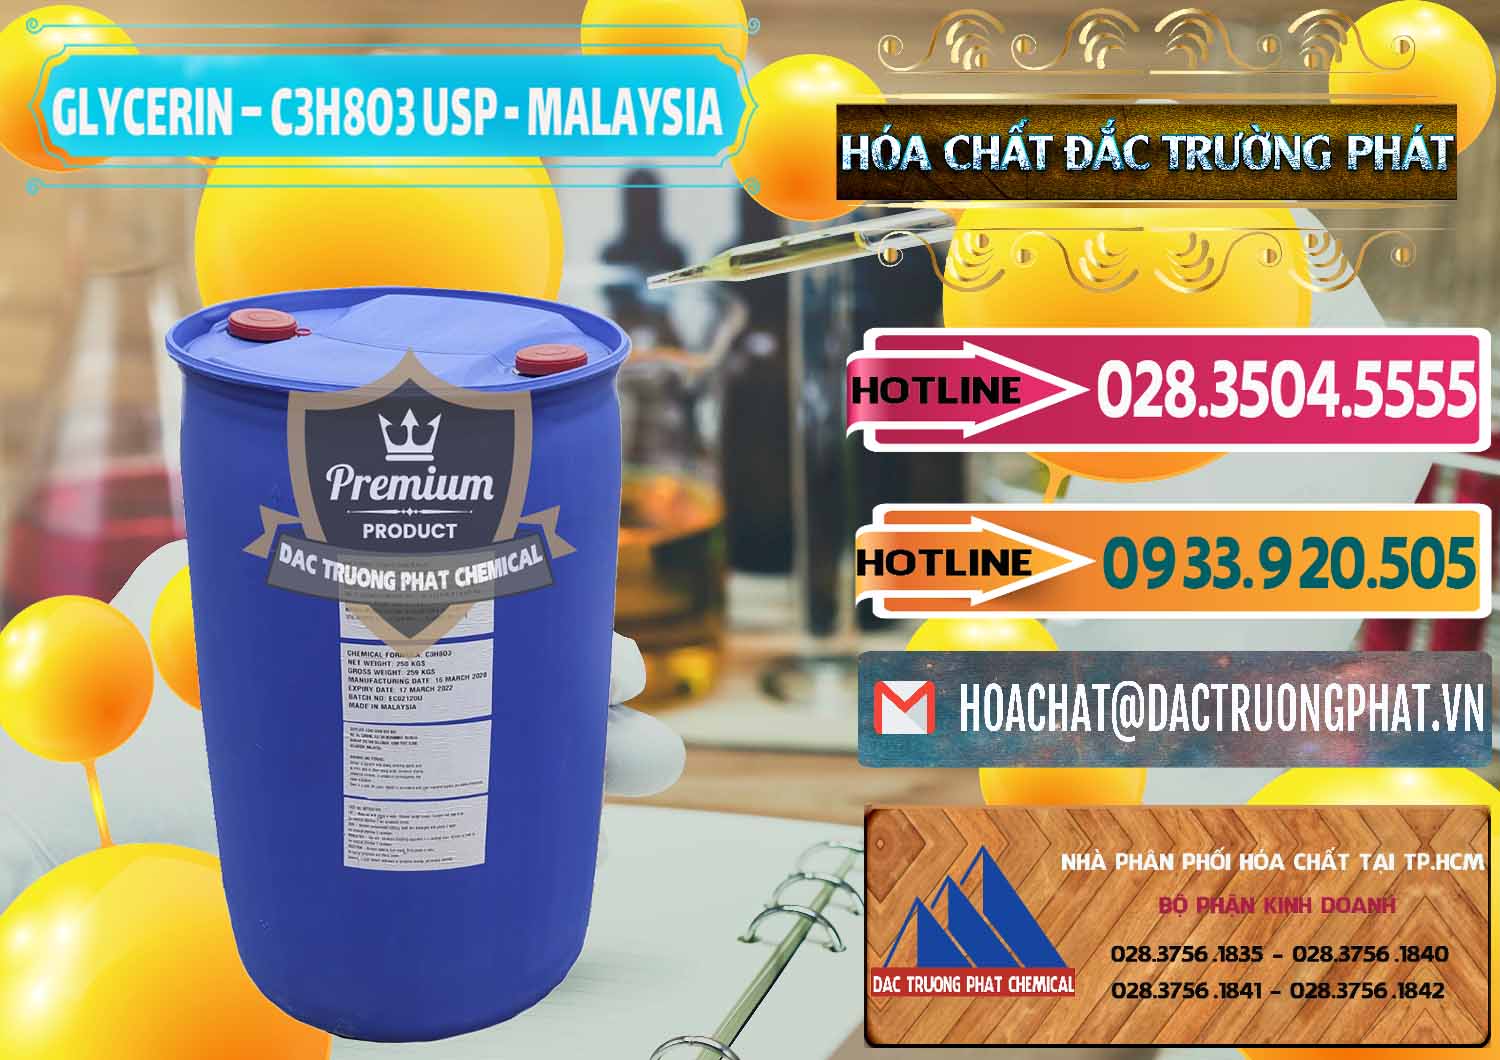 Bán & phân phối Glycerin – C3H8O3 USP Malaysia - 0233 - Cty chuyên bán ( cung cấp ) hóa chất tại TP.HCM - dactruongphat.vn